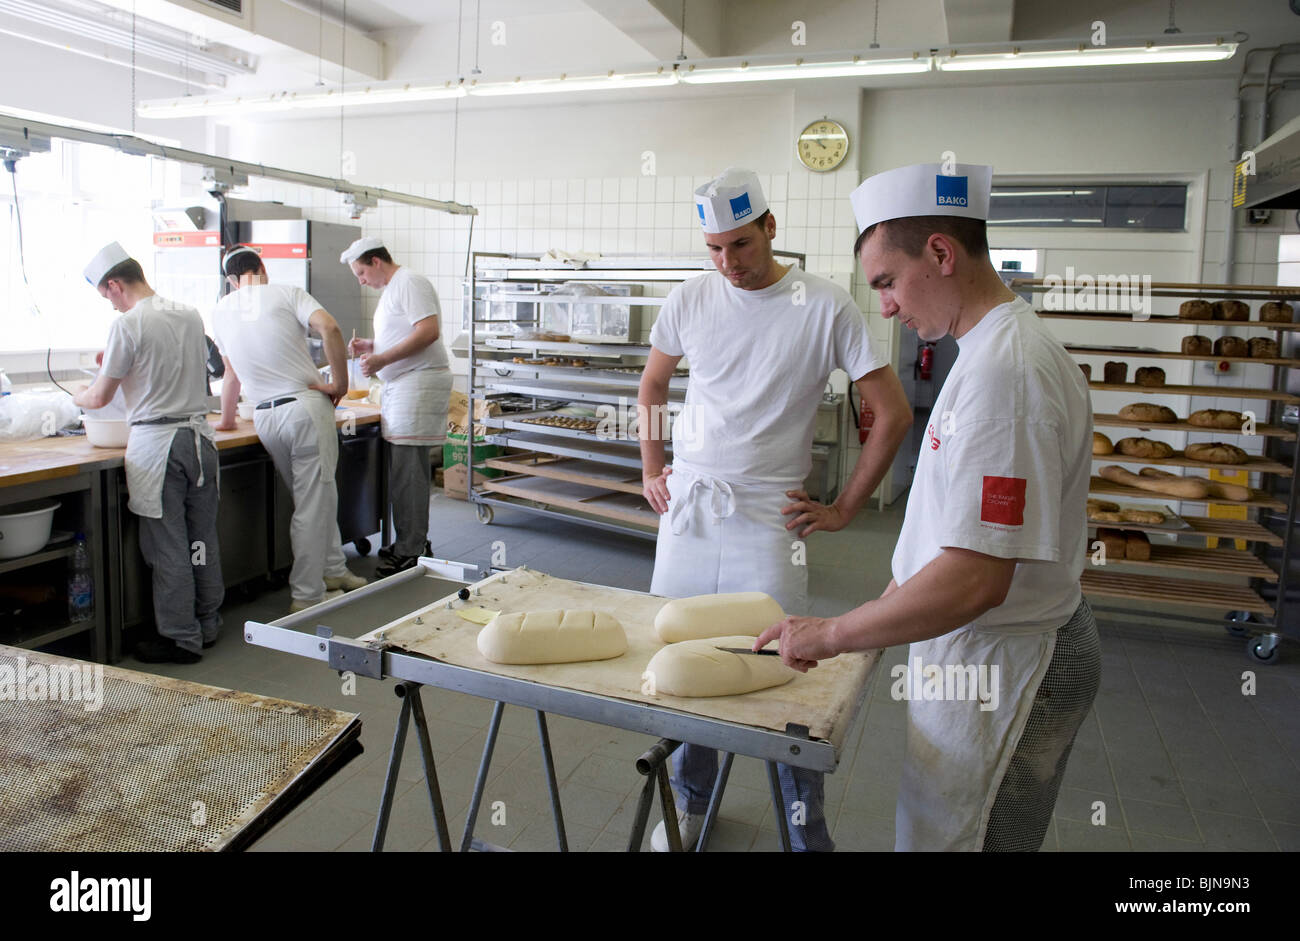 L'éducation master boulangers, Potsdam, Allemagne Banque D'Images